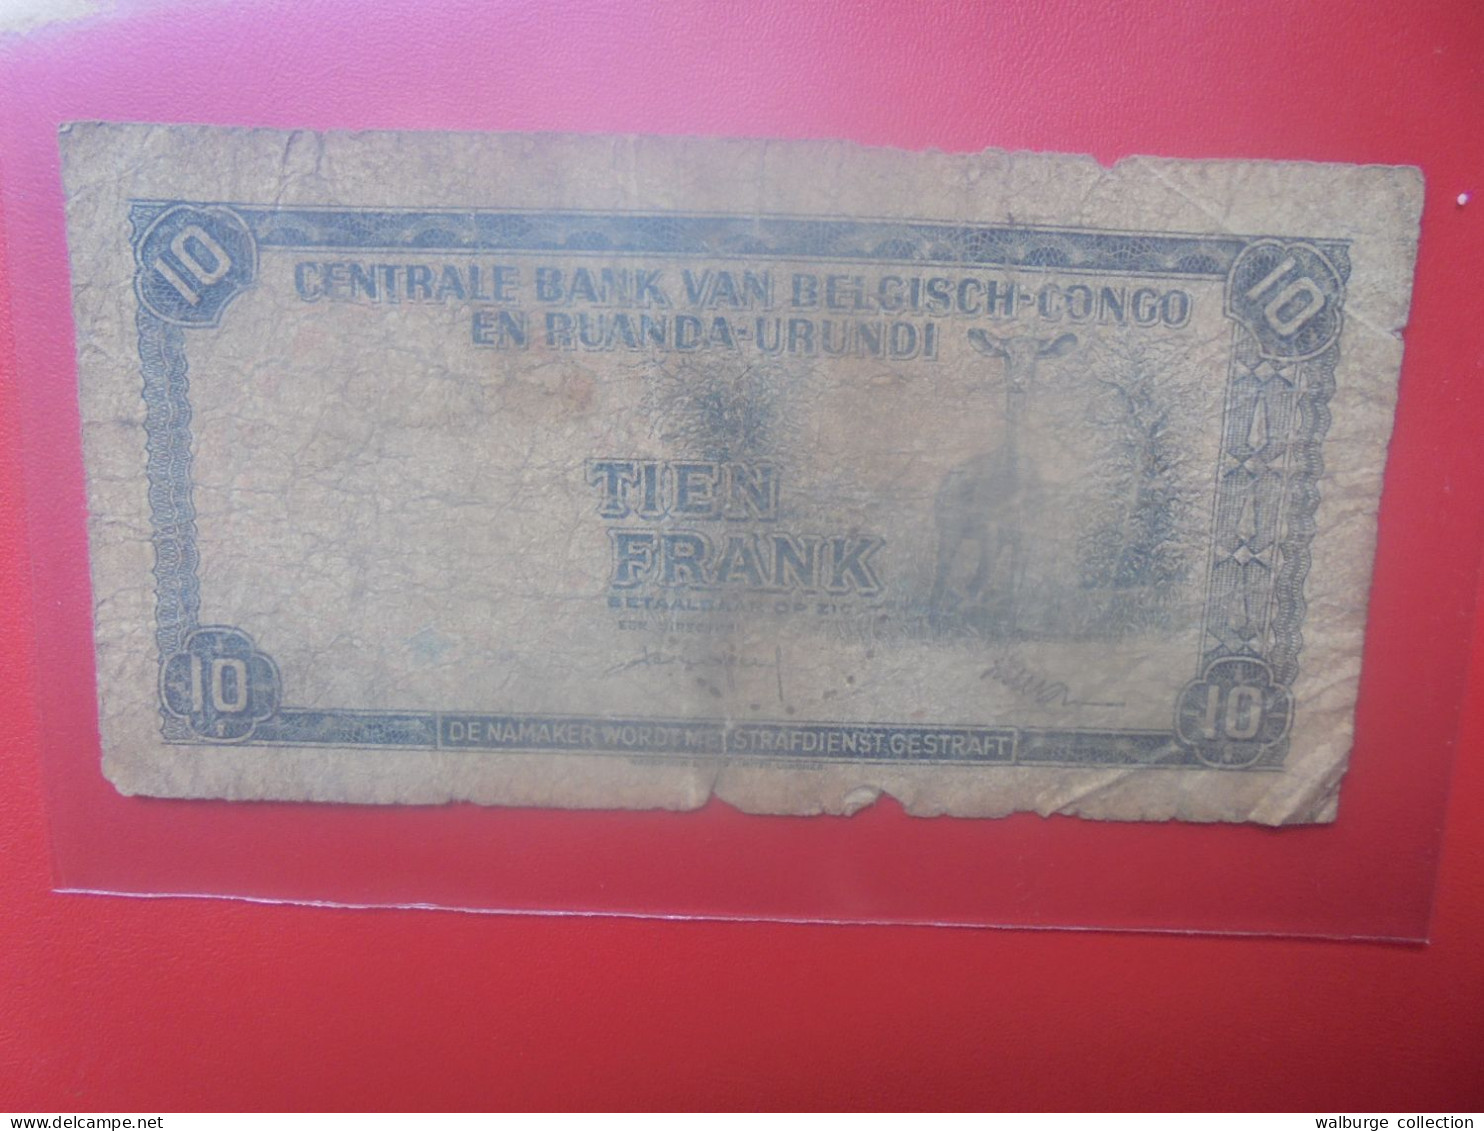 CONGO BELGE 10 FRANCS 1-12-58 Circuler (B.33) - Belgian Congo Bank